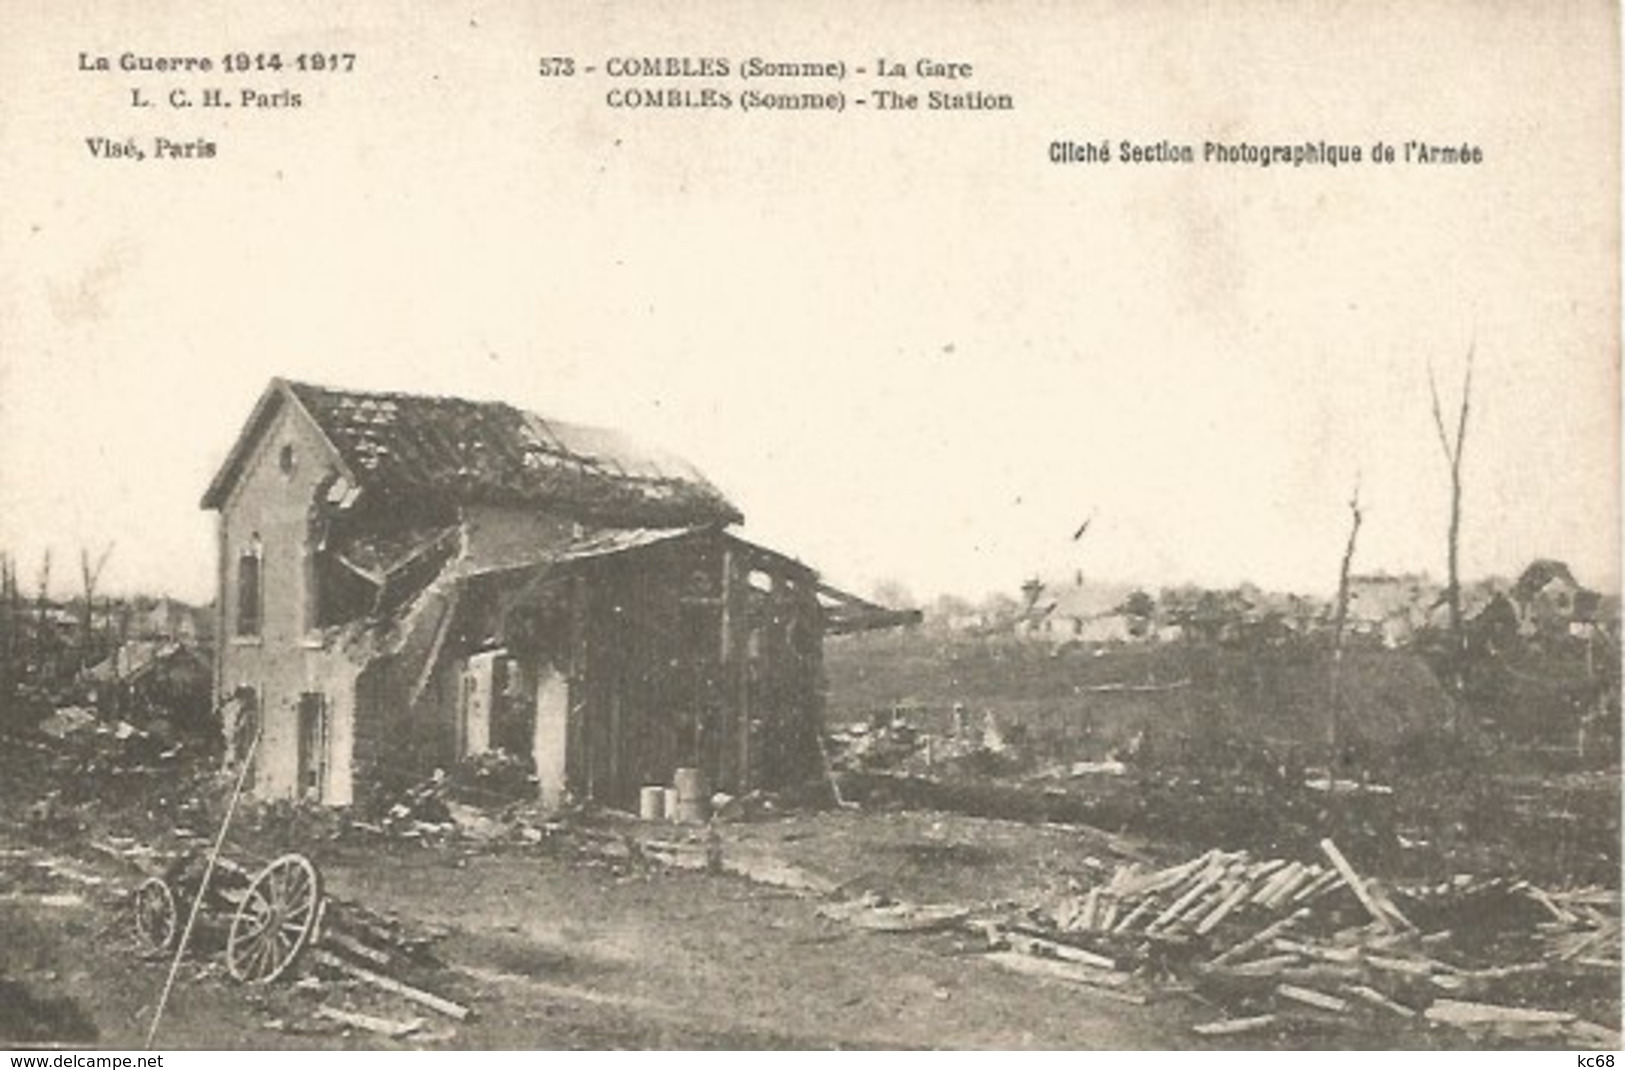 80 - COMBLES - La Gare Détruite Durant La Guerre 1914 - 1917 - Combles